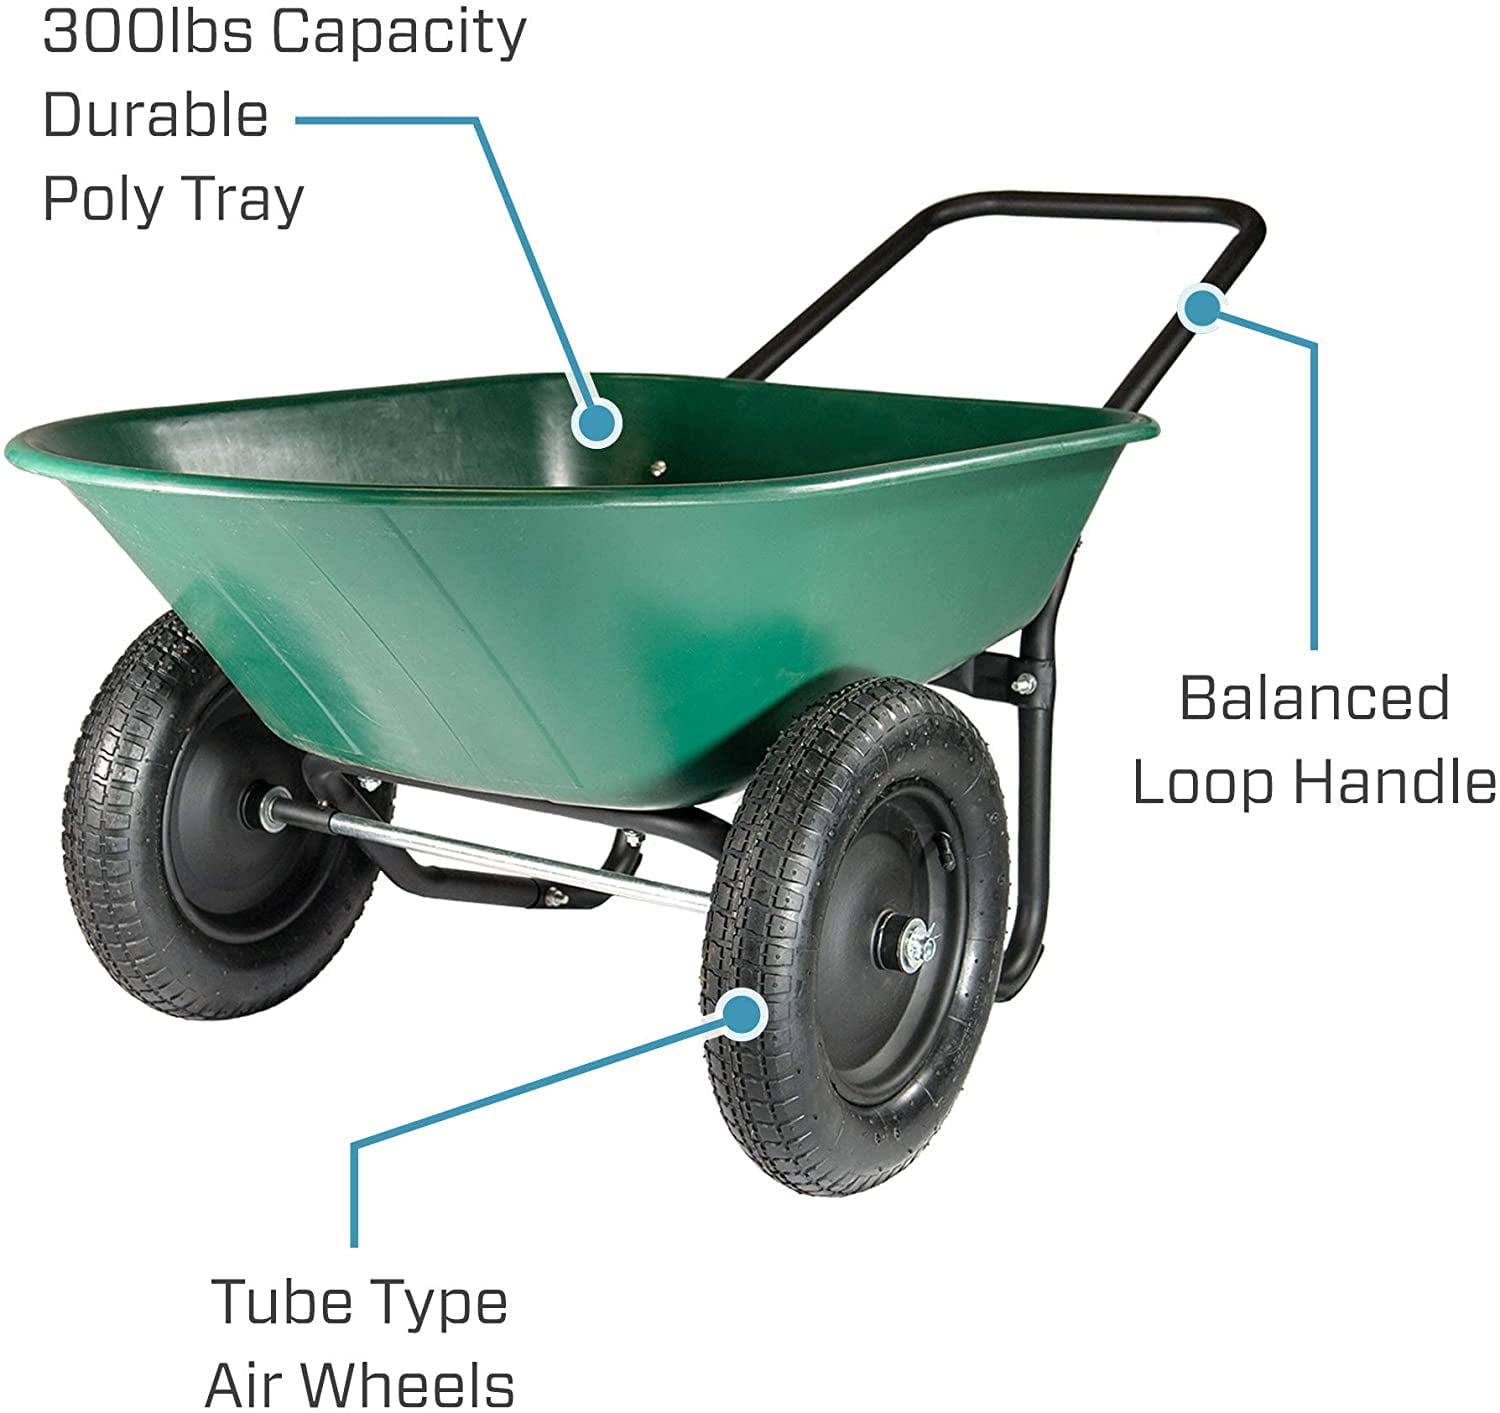 2 Tire Wheelbarrow Home Garden Cart Garden Work Heavy-duty Dolly Green 